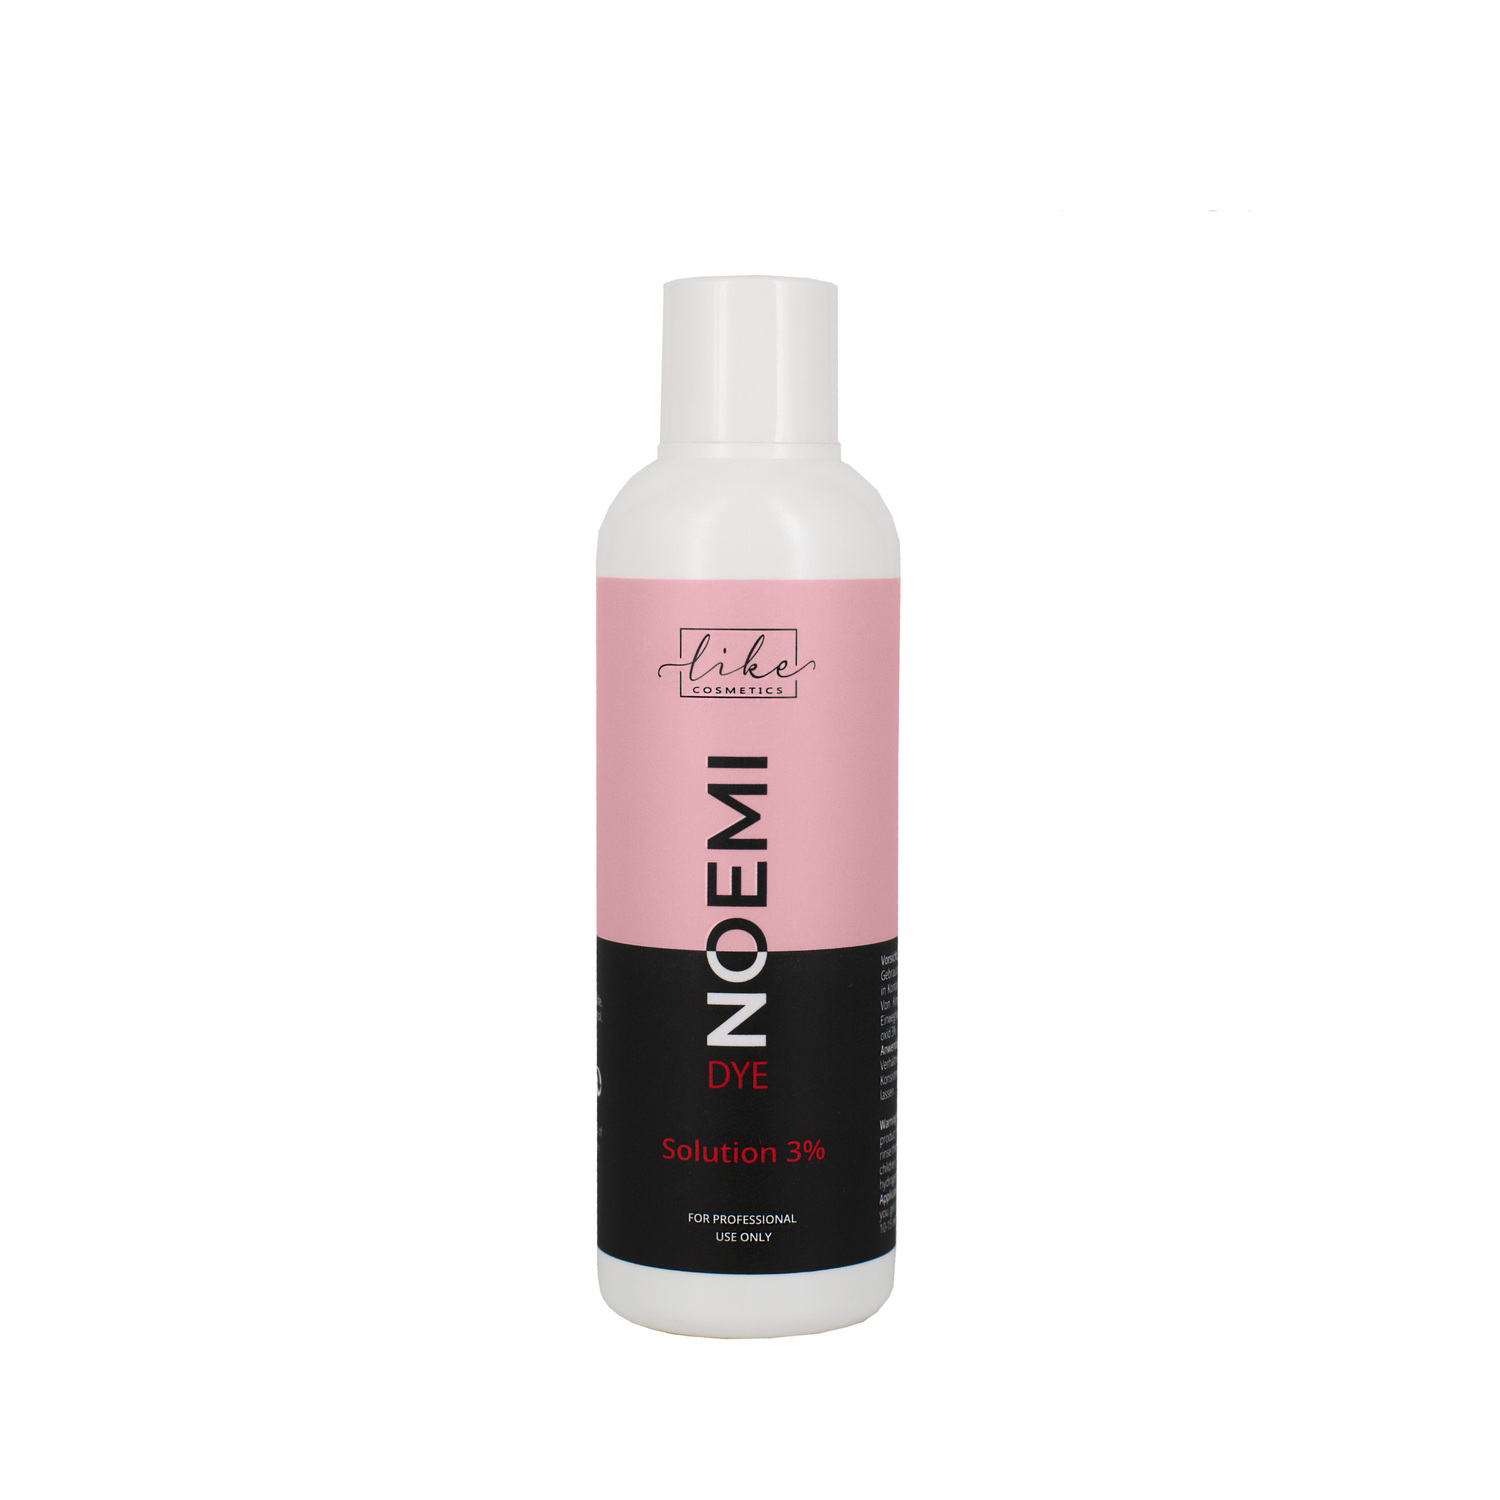 Noemi Dye Solution 3% (Oxid), 100 ml